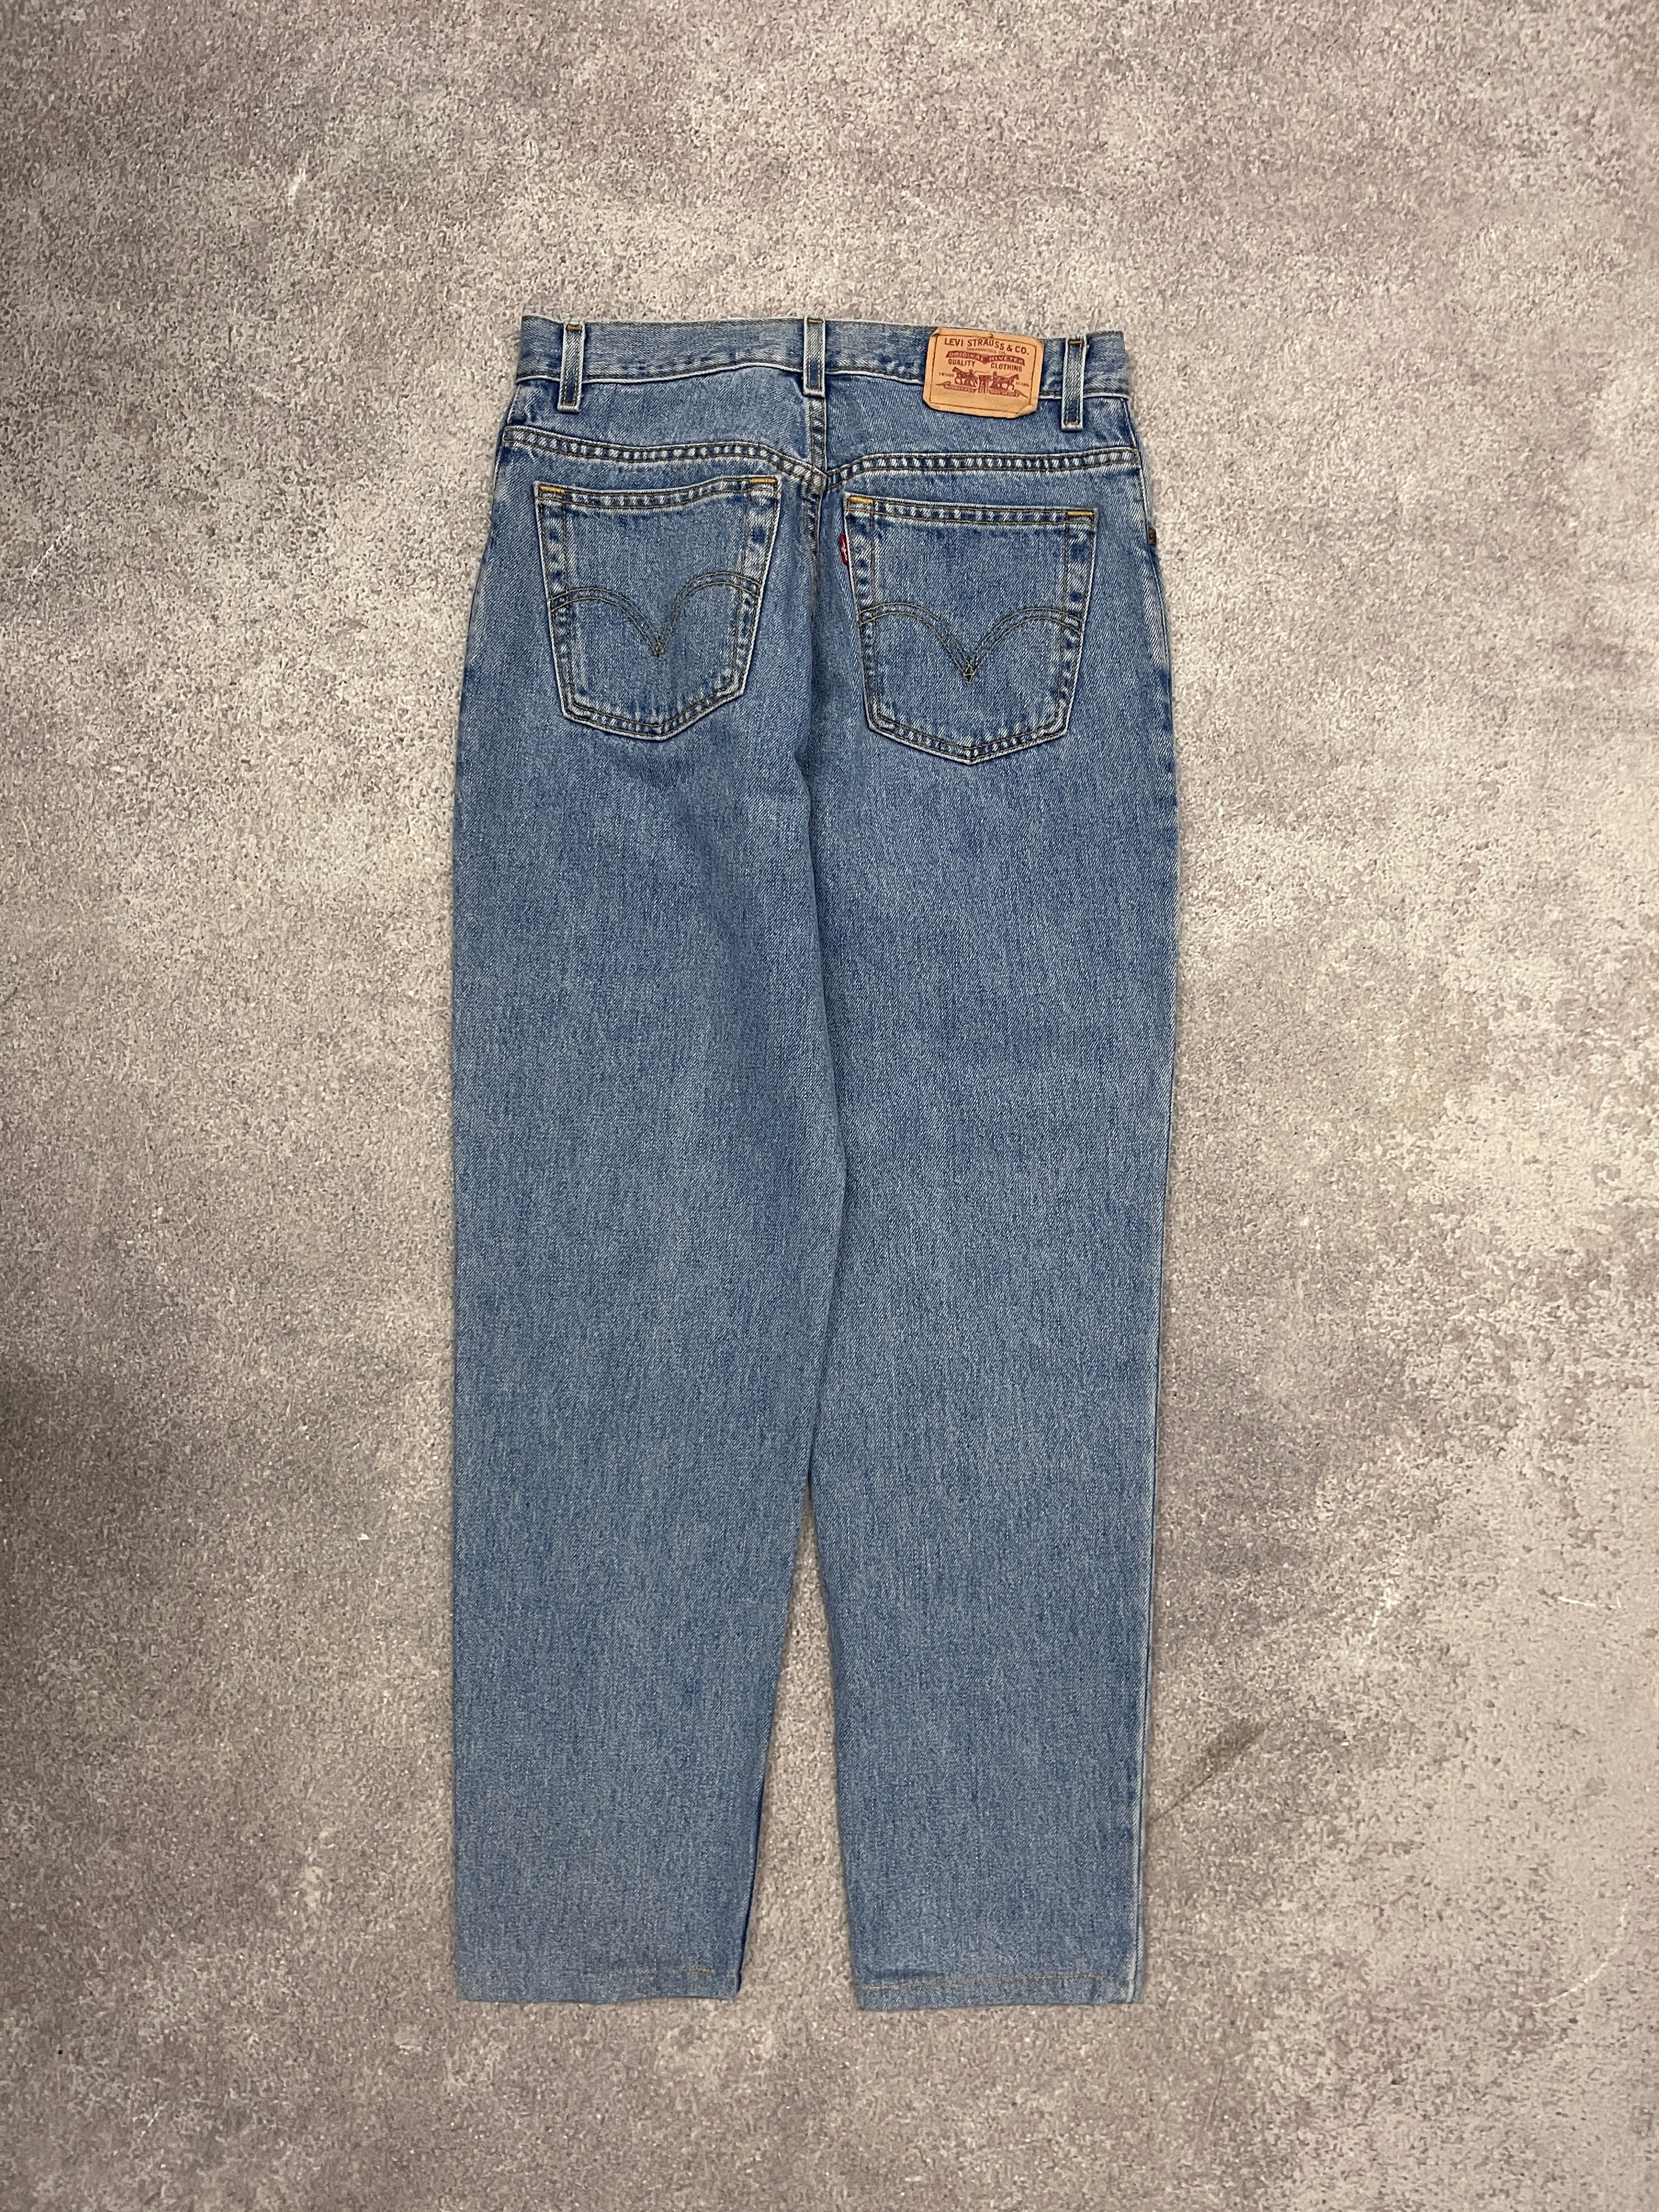 Vintage Levi 550 Denim Jeans Blue // W00 L00 - RHAGHOUSE VINTAGE